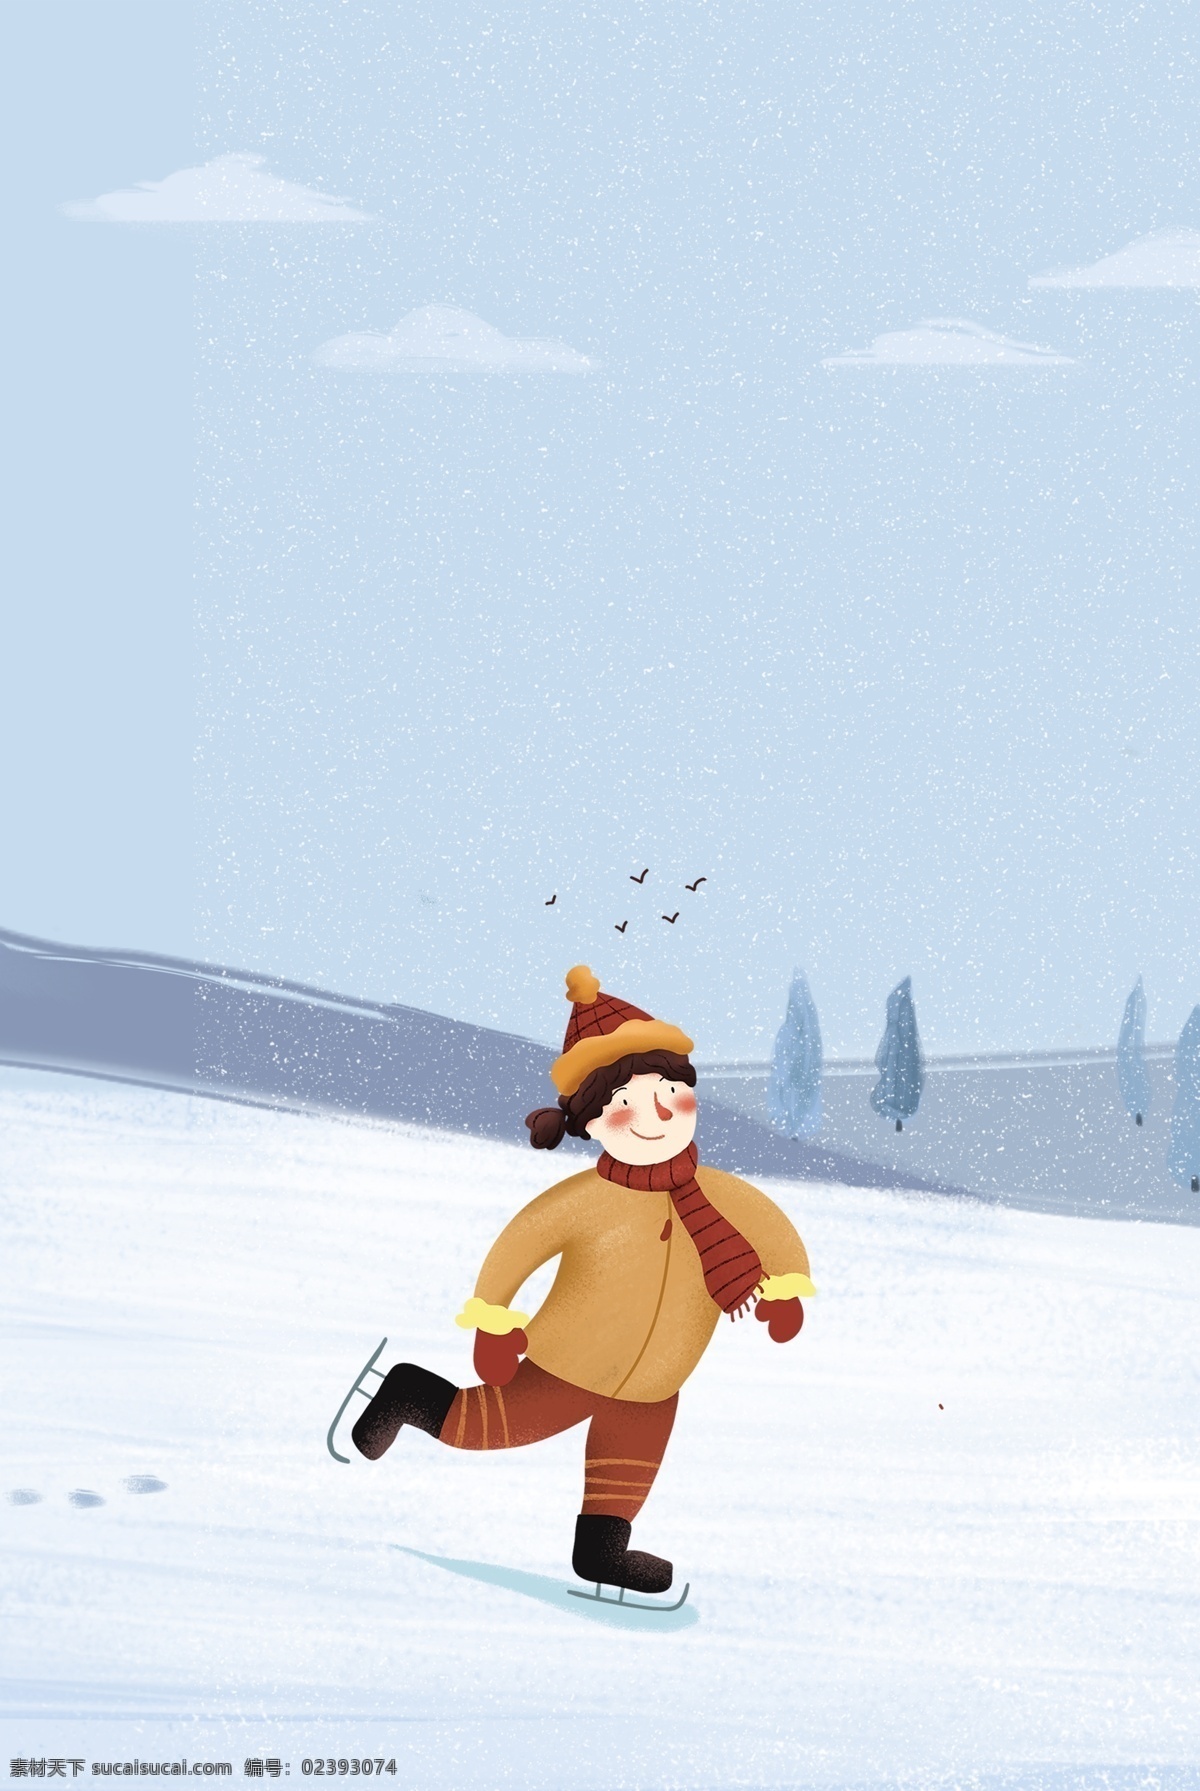 冬日 滑雪 女孩 插 画风 户外运动 海报 冬天 出行 户外 运动 插画风 促销海报